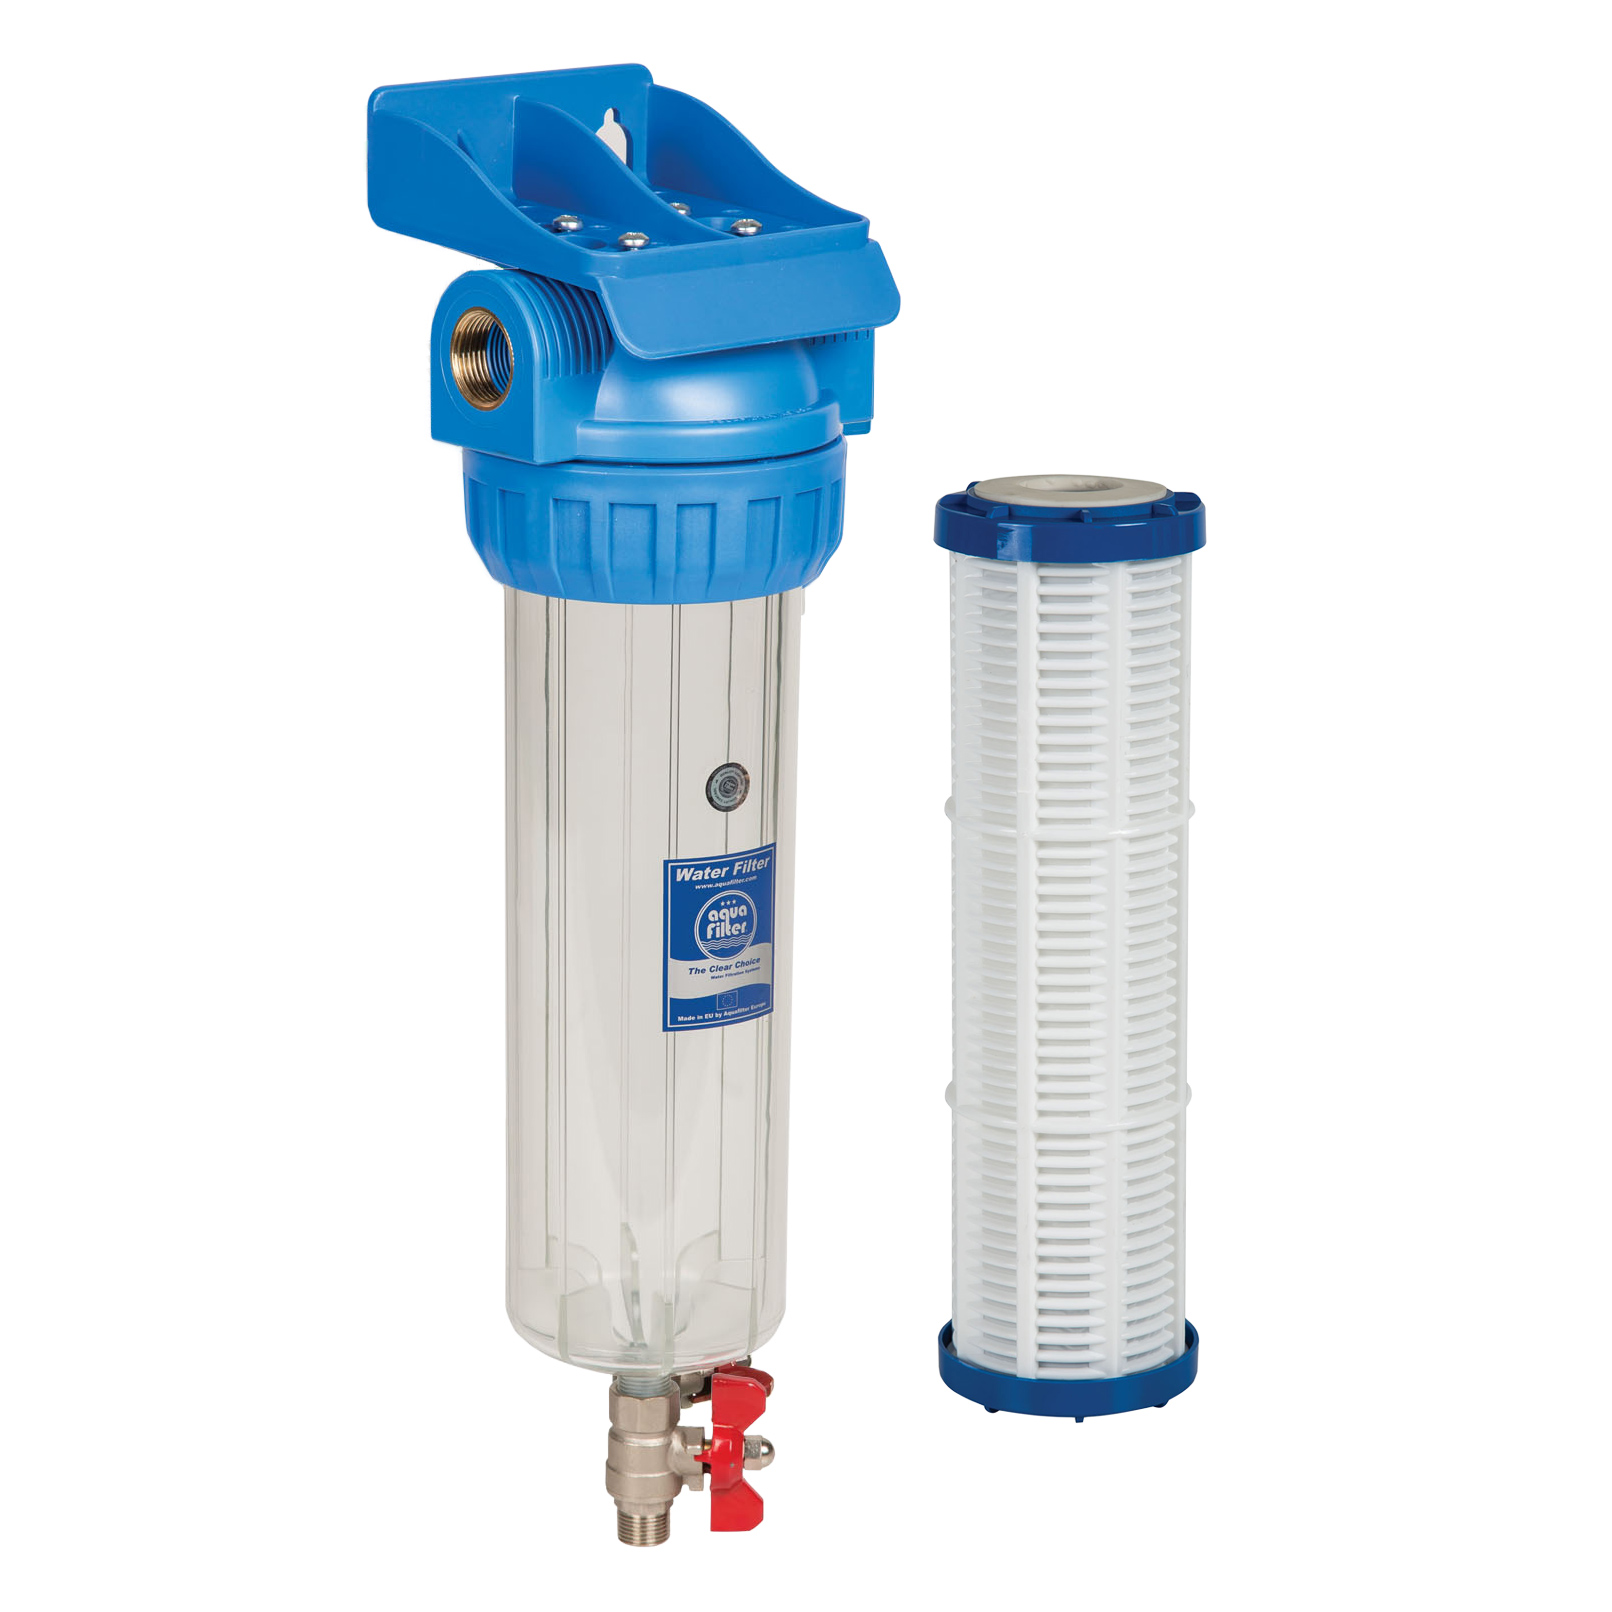 Фильтр сливной воды. 281750-20 Корпус водяного фильтра 95 body Water Filter Johnston Sweepers. Bb20 корпус фильтра со сливом. Водяной фильтр 950 WTS. Магистральный фильтр со сливным краном.